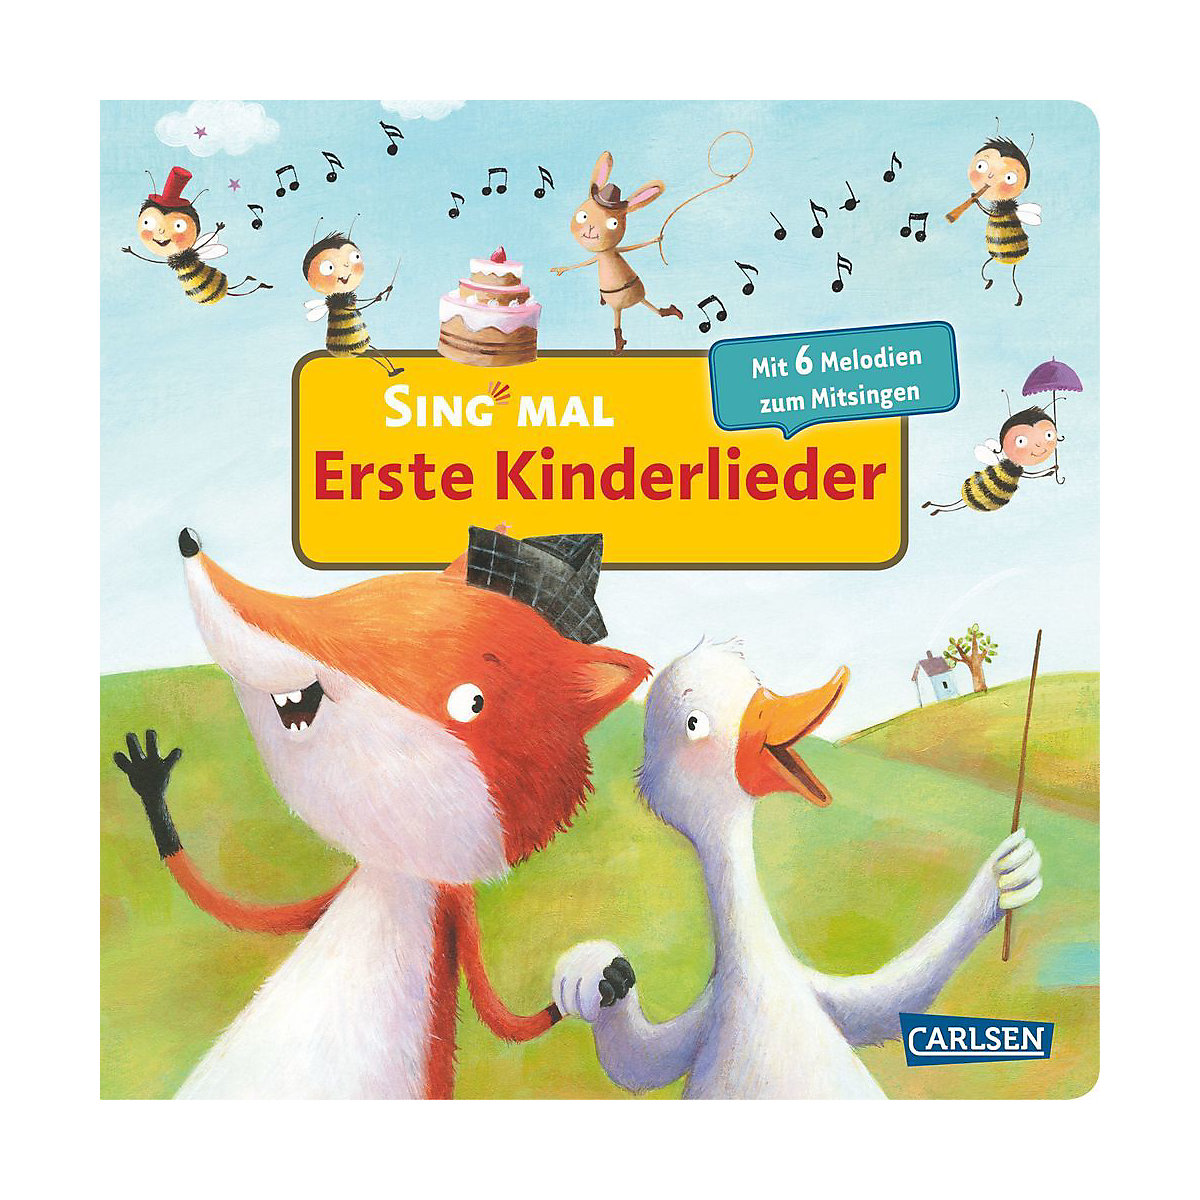 Sing mal: Erste Kinderlieder Soundbuch mit Liedern